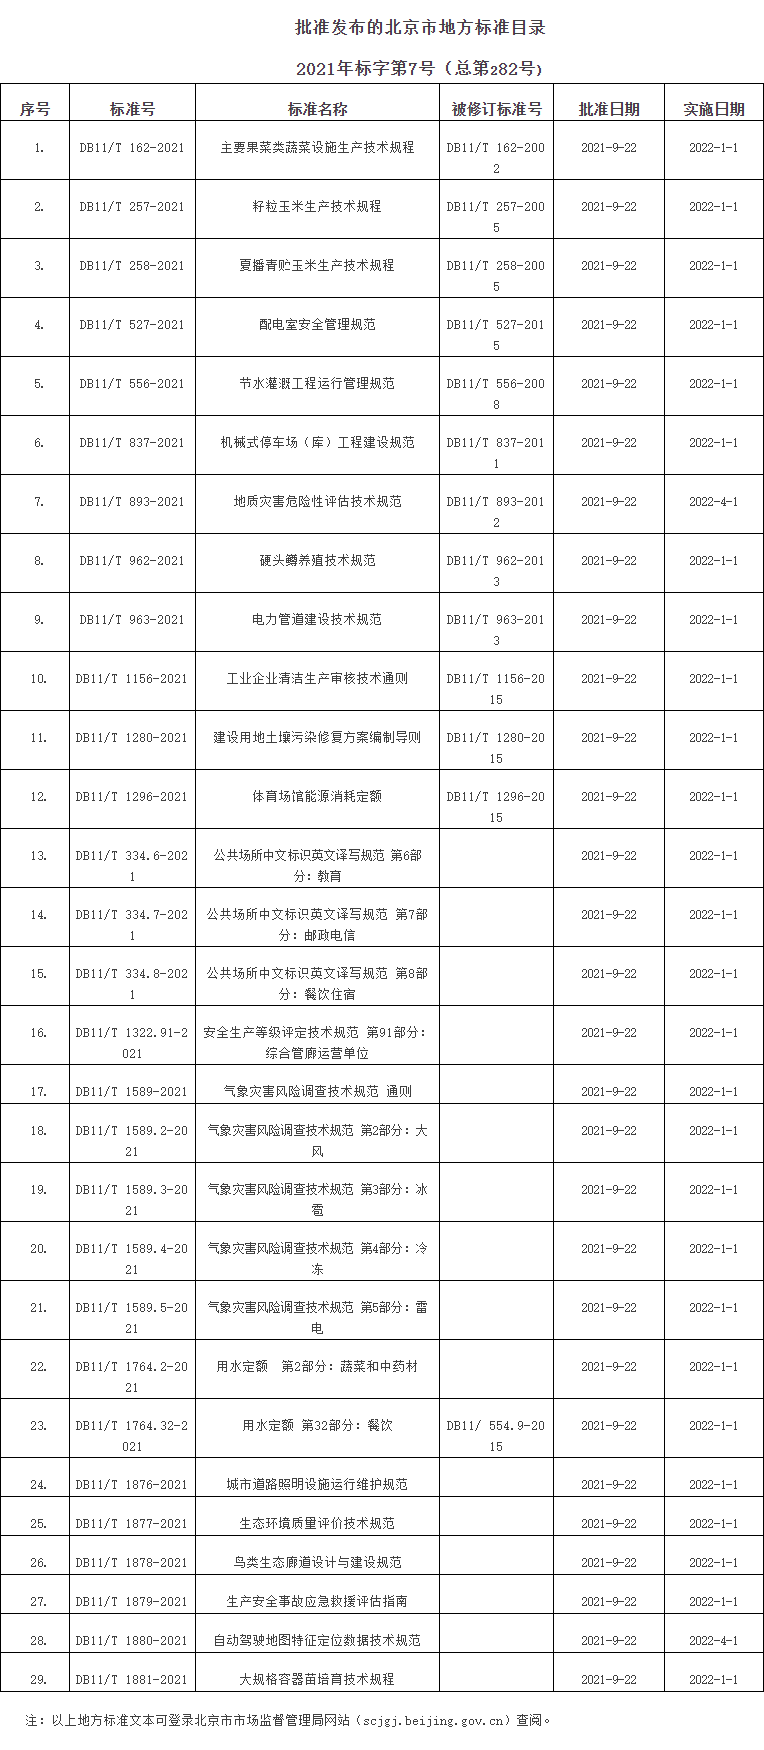 批准发布的北京市地方标准目录.png